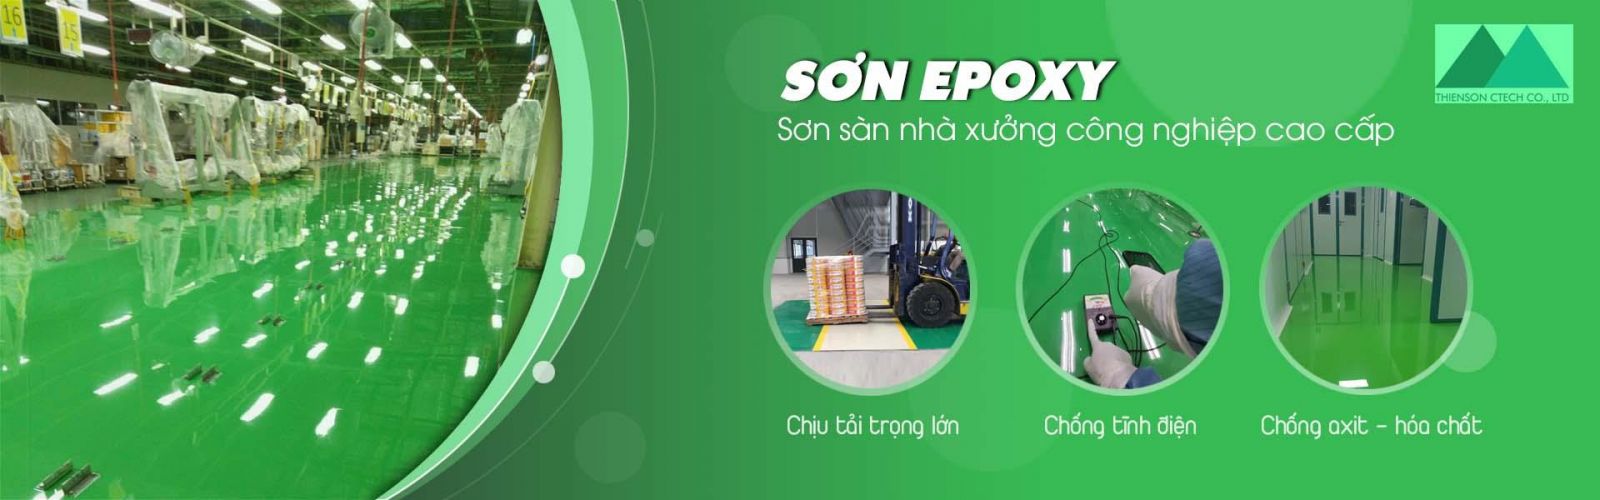 Thiên Sơn Epoxy – Đơn vị hàng đầu về cung cấp và thi công các loại sơn epoxy chất lượng